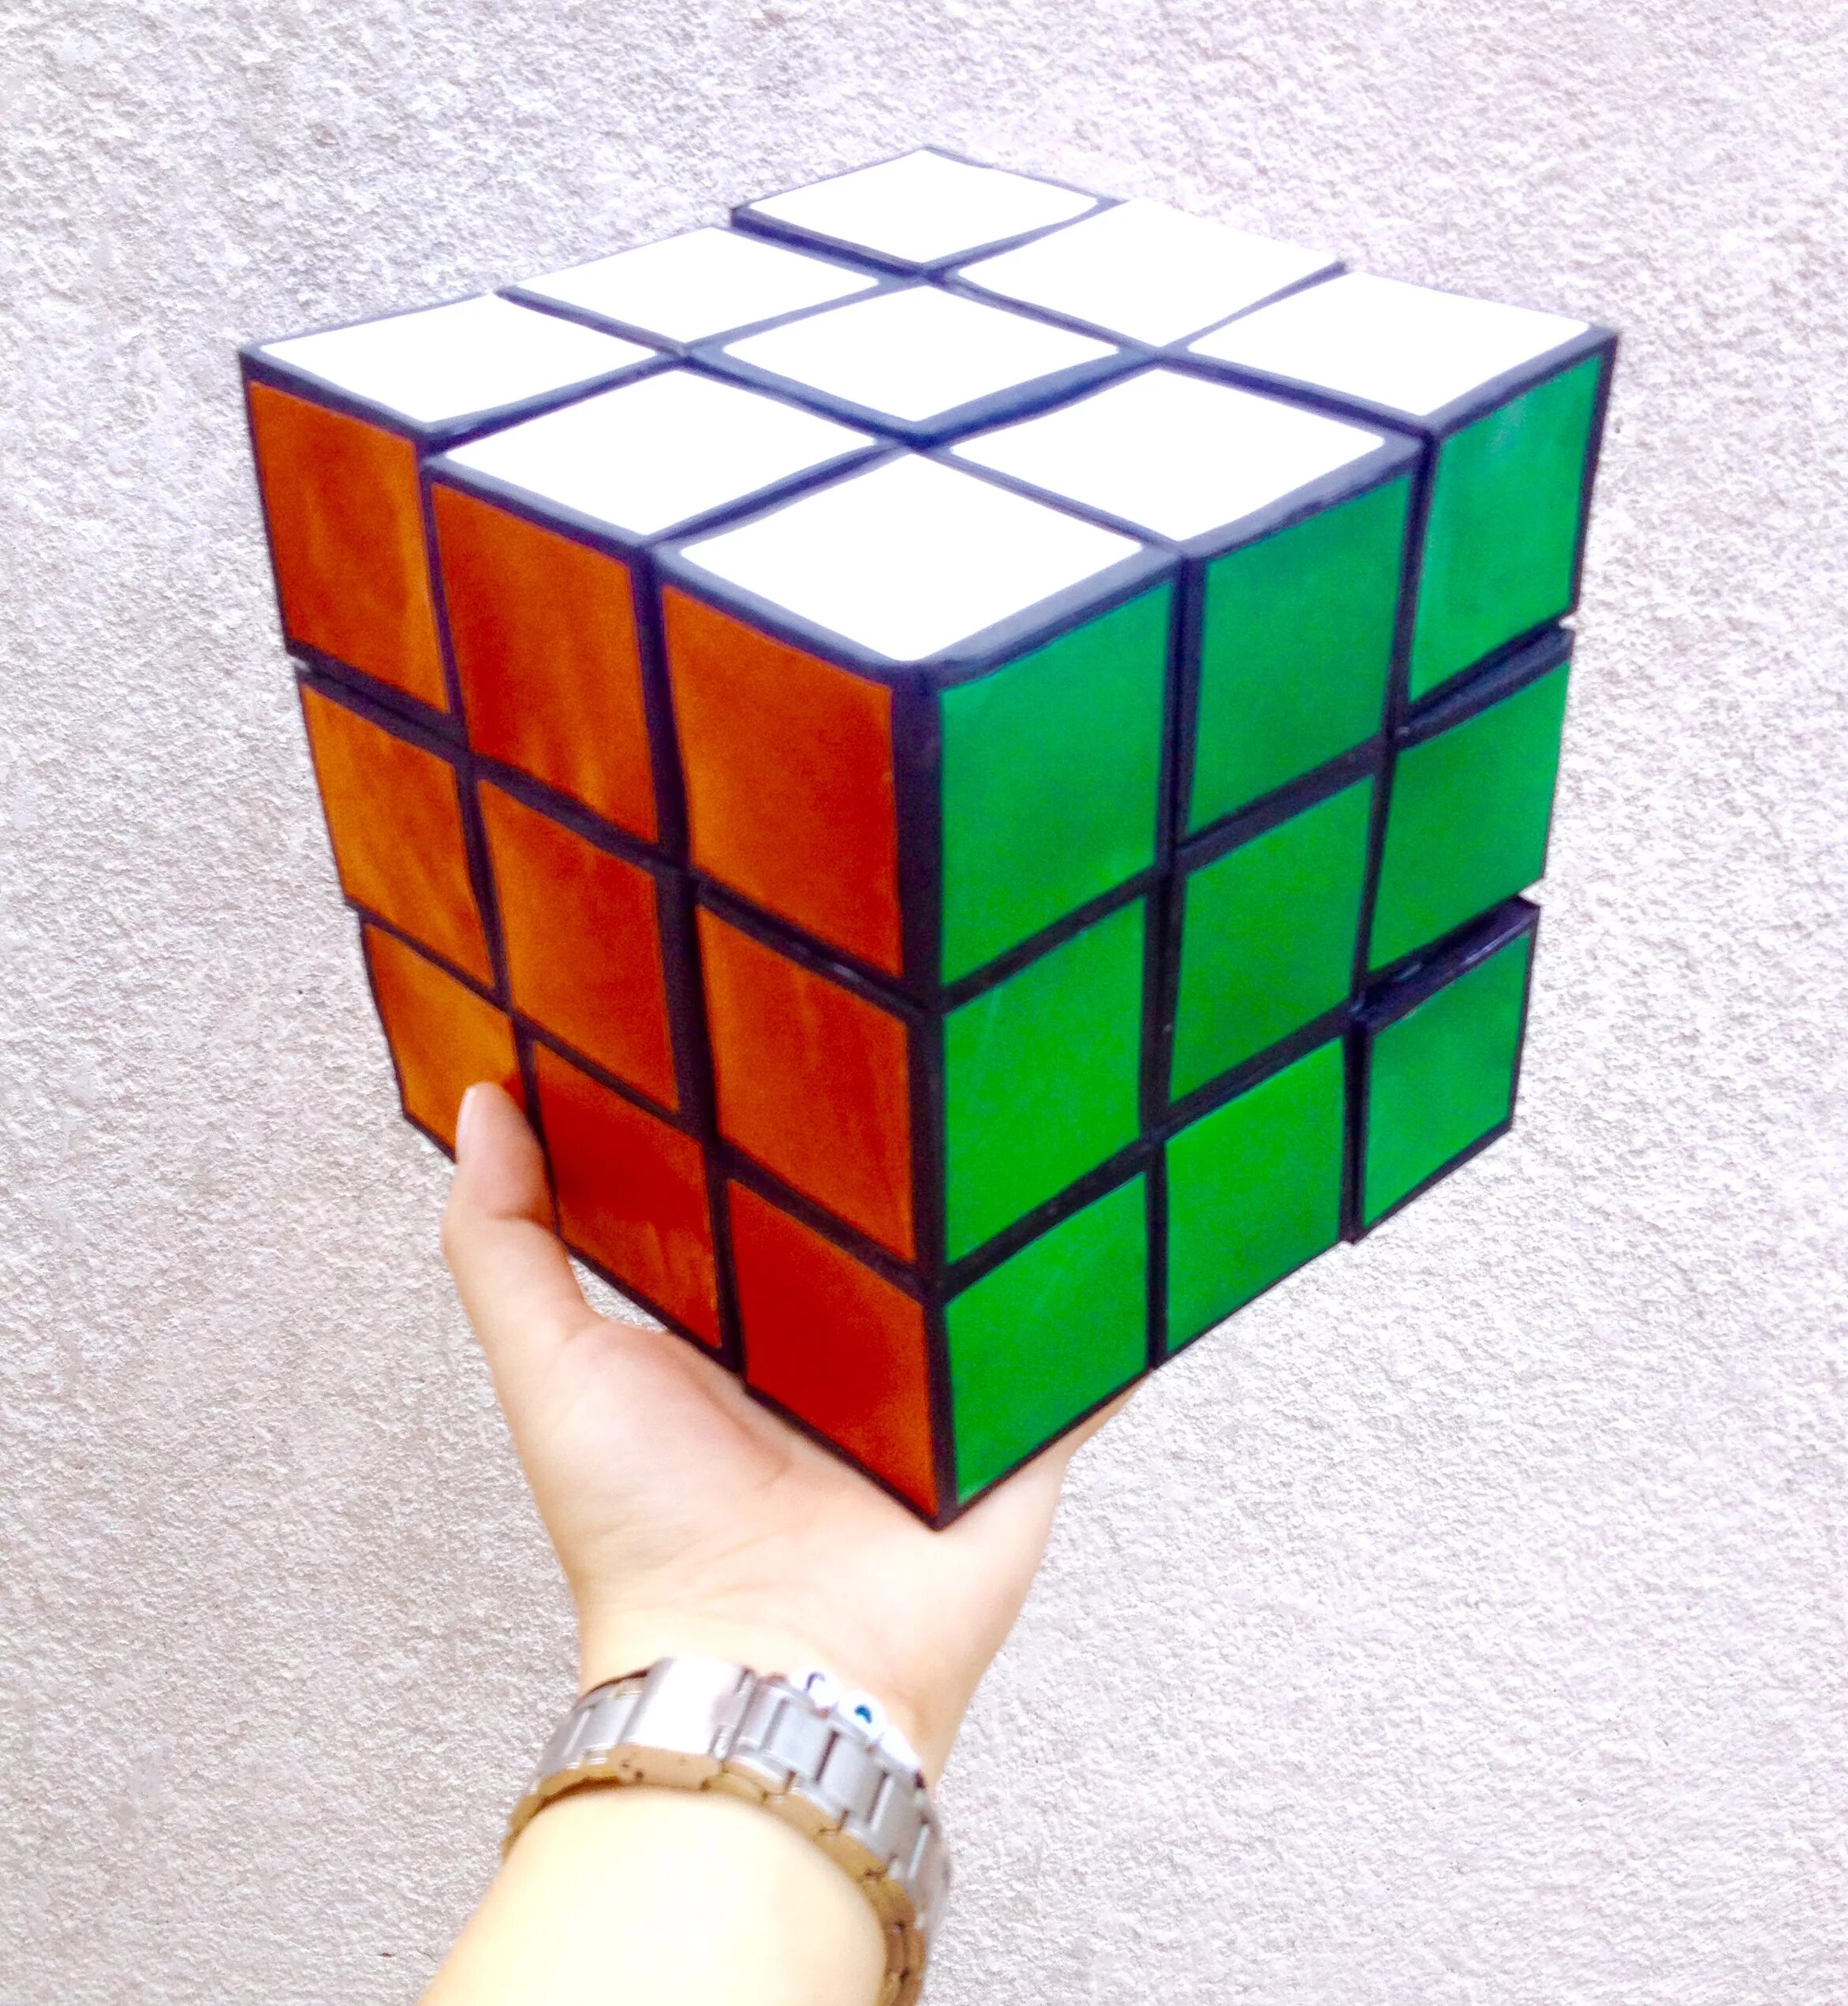 Цвета рубика. Кубик рубик 3x3. Кубик Рубика 3х3 360 градусов. Кубик рубик 3x3 1974. Рубикс кубик Рубика 3х3 большой.